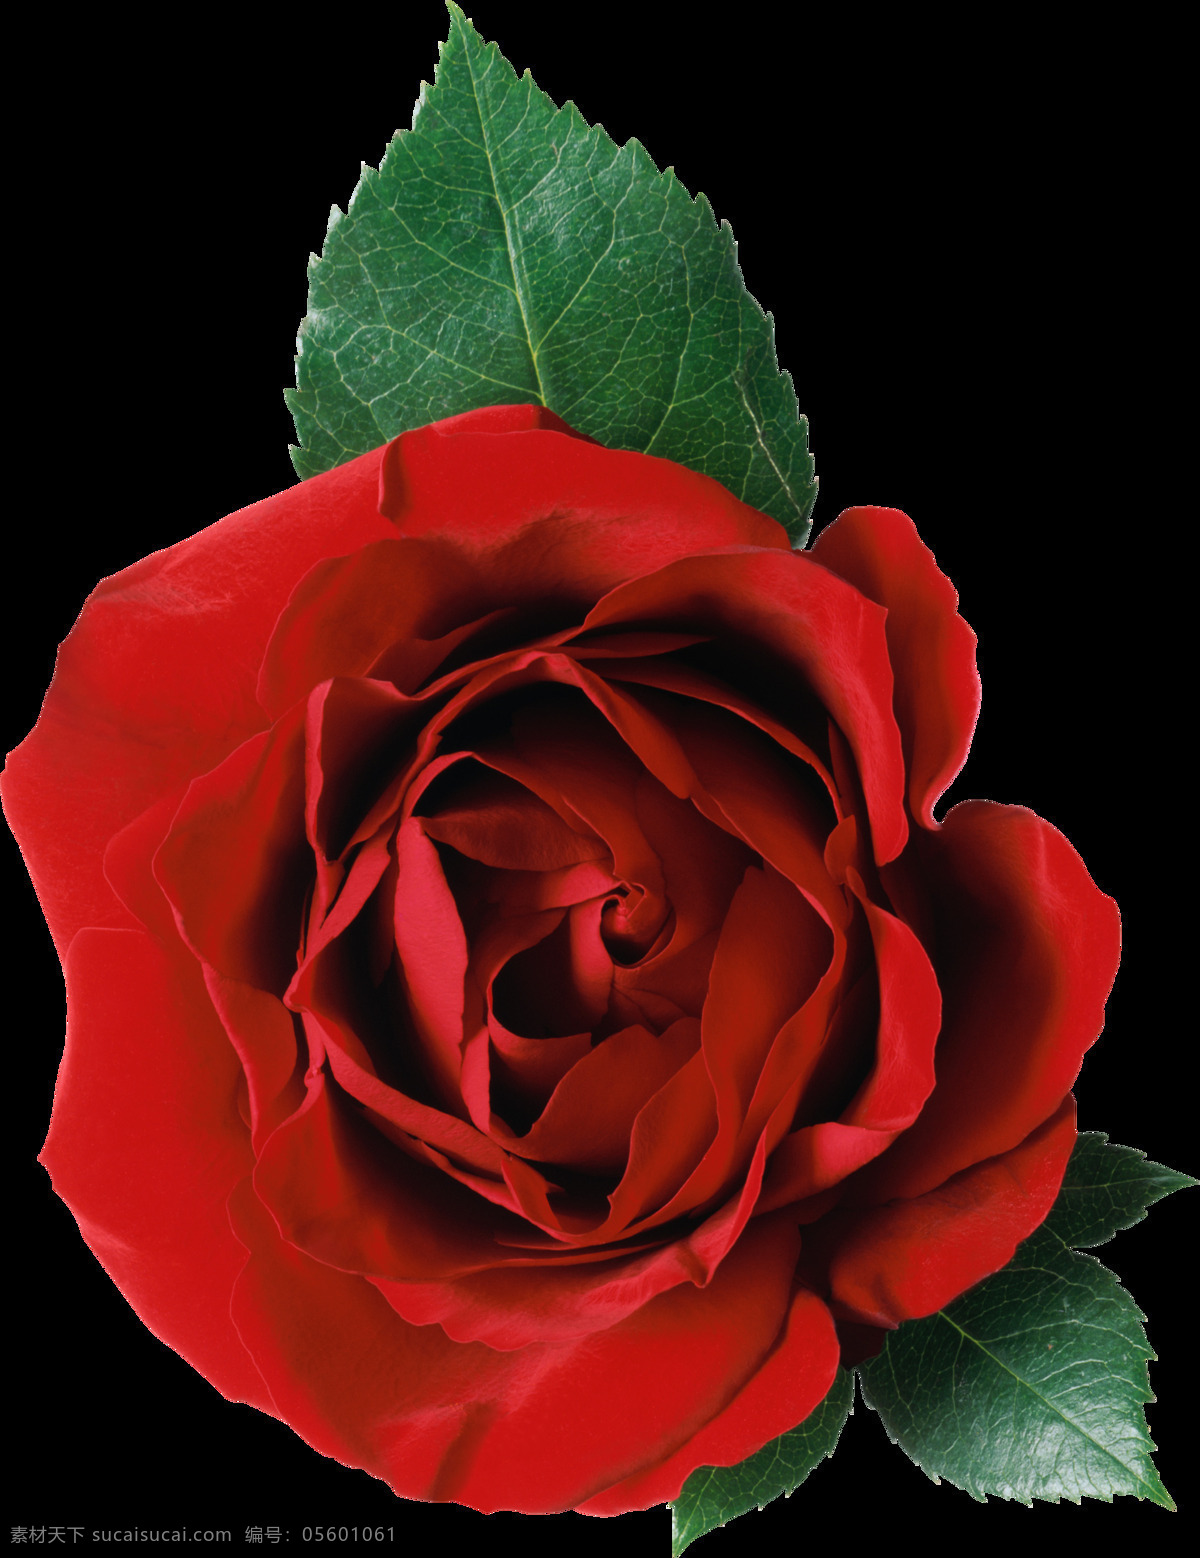 朵 红玫瑰 免 抠 透明 图 层 红玫瑰背景 血红玫瑰 9红玫瑰 玫瑰花语 红玫瑰素材 爱情素材 情人节素材 情人节元素 浪漫元素 爱情元素 红玫瑰图片